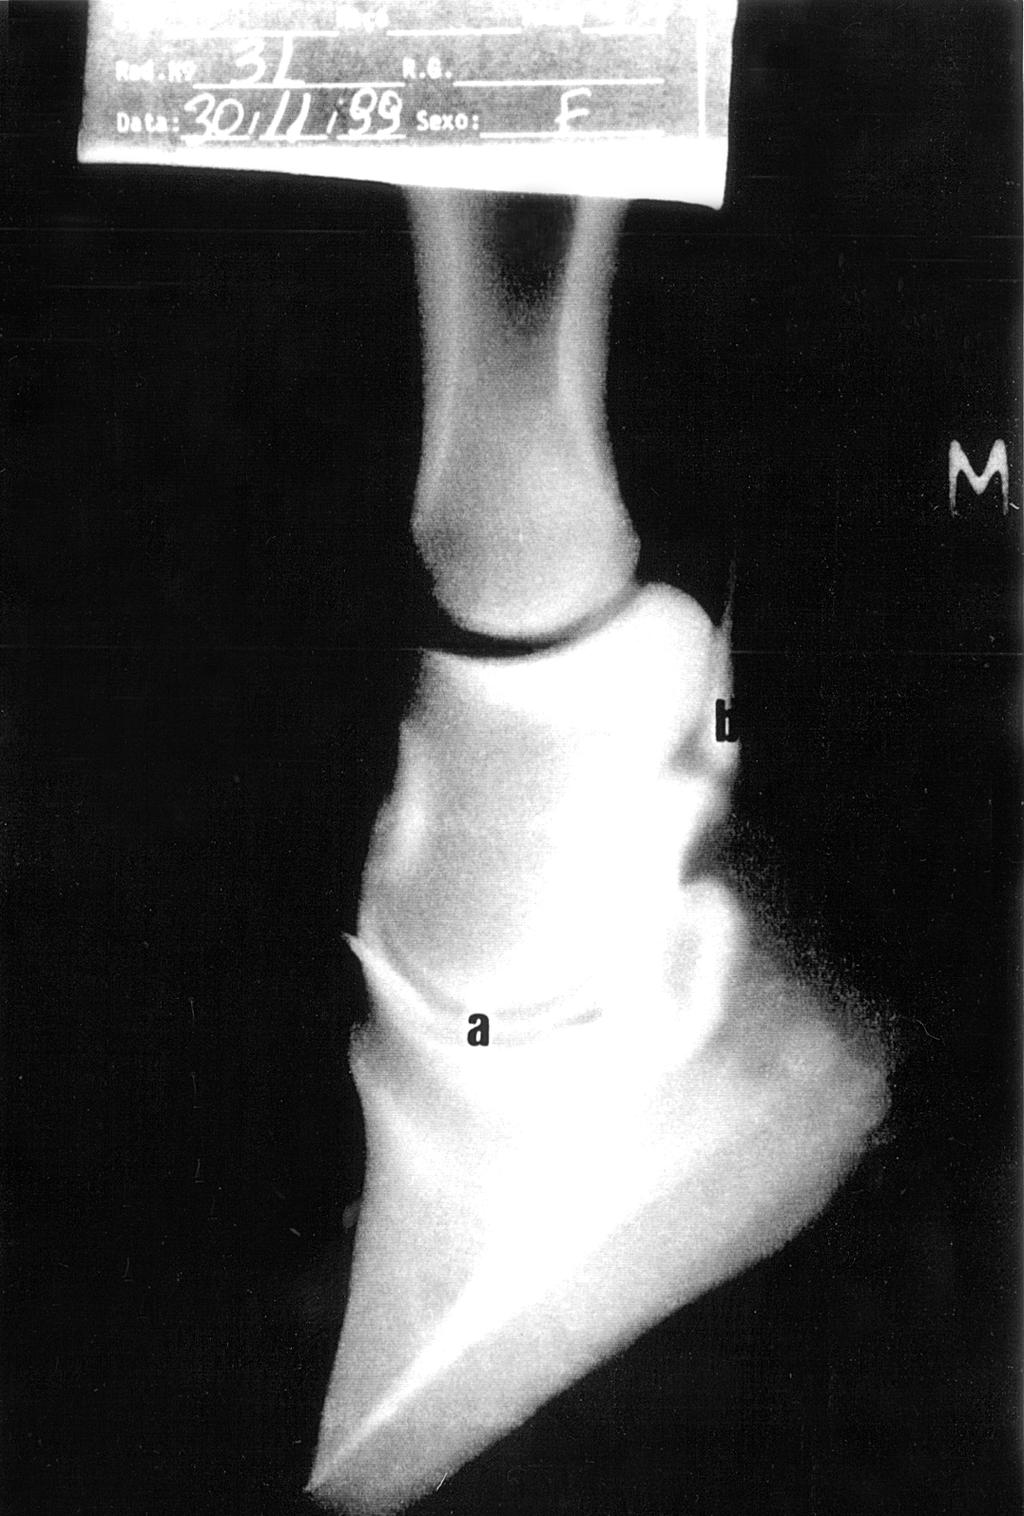 dia de idade demonstrando a articulação interfalangeana distal (a), bolsa do osso navicular (b), tendão do flexor profundo do dedo (c), falange média (d), falange distal (e), extremidade distal da